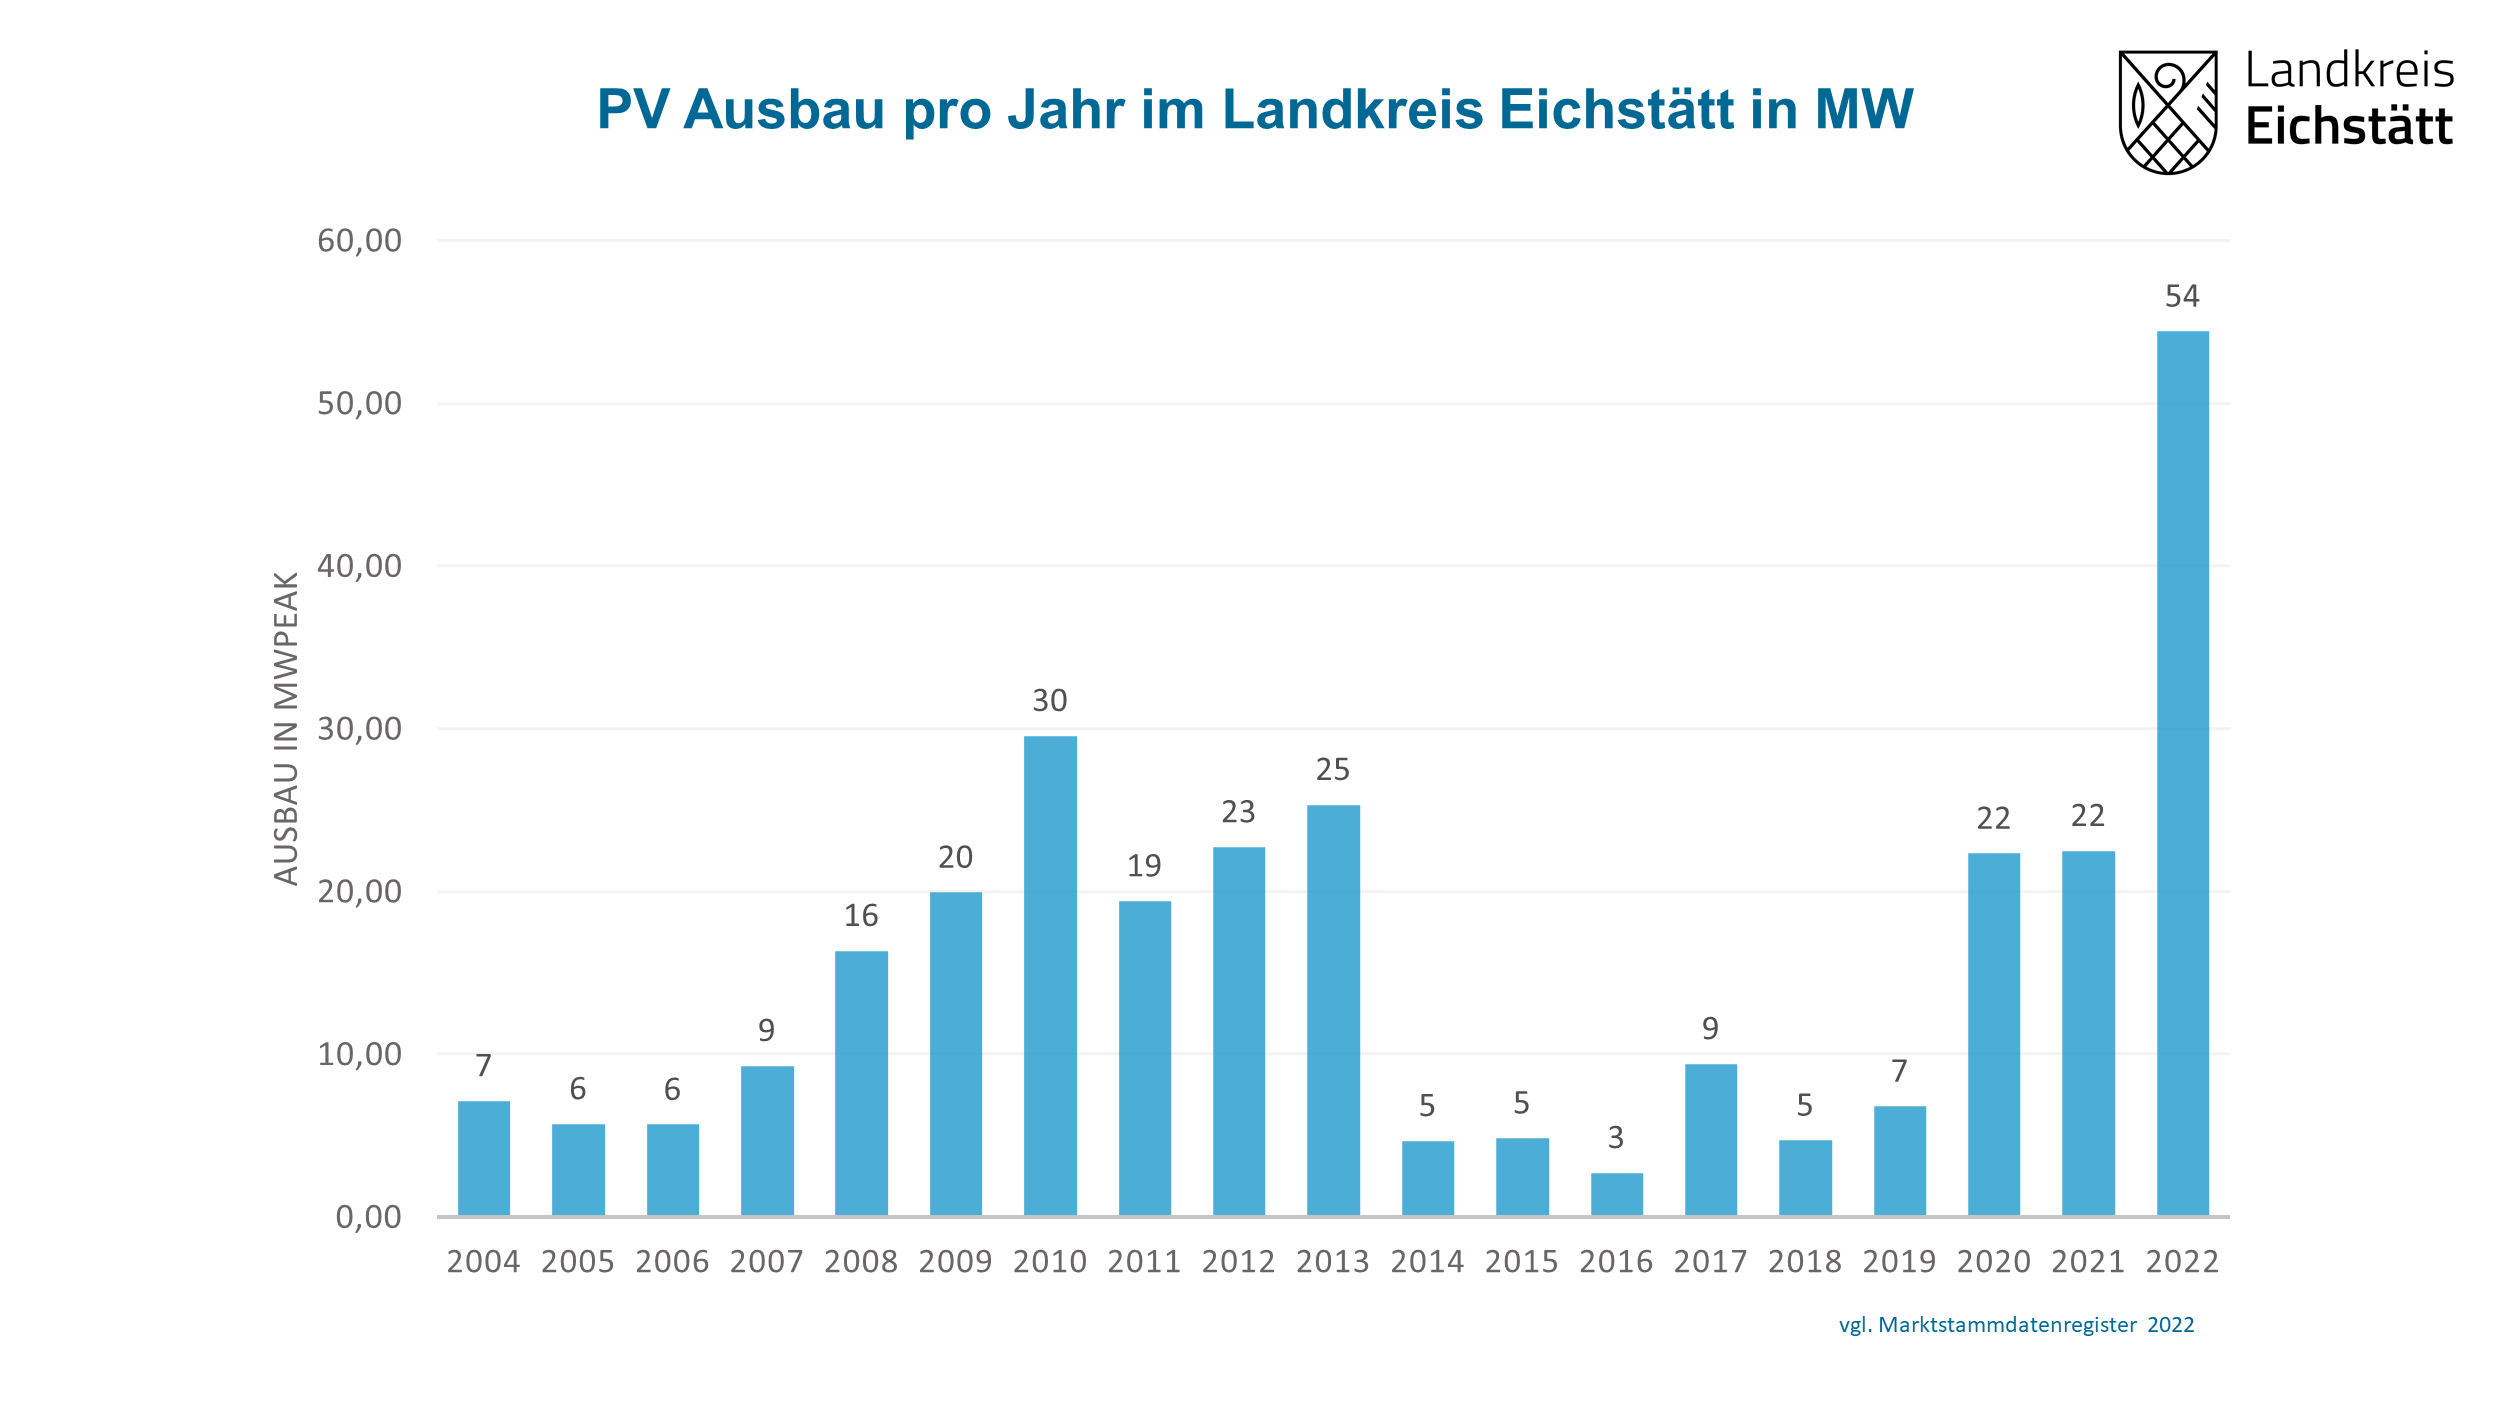 Auf der Abbildung ist zu sehen, dass der Photovoltaik-Zubau im Landkreis Eichstätt im Jahr 2004 bei 7,12 Megawatt lag und schrittweise über 16,35 MW im Jahr 2008 bis hin zu 29,56 MW im Jahr 2010 angestiegen ist. In den folgenden drei Jahren lag der PV-Zubau konstant bei über 19 MW. Ab dem Jahr 2014 bis in das Jahr 2019 konnten nur deutlich geringere Ausbauzahlen von 5 bis 9 MW pro Jahr erreicht werden. In den Jahren 2020 und 2021 sind die Zubauzahlen wieder stark auf jeweils 22MW pro Jahr angestiegen. Das Jahr 2022 bildet mit 54,41 MW den bisherigen Spitzenwert der letzten 20 Jahre.